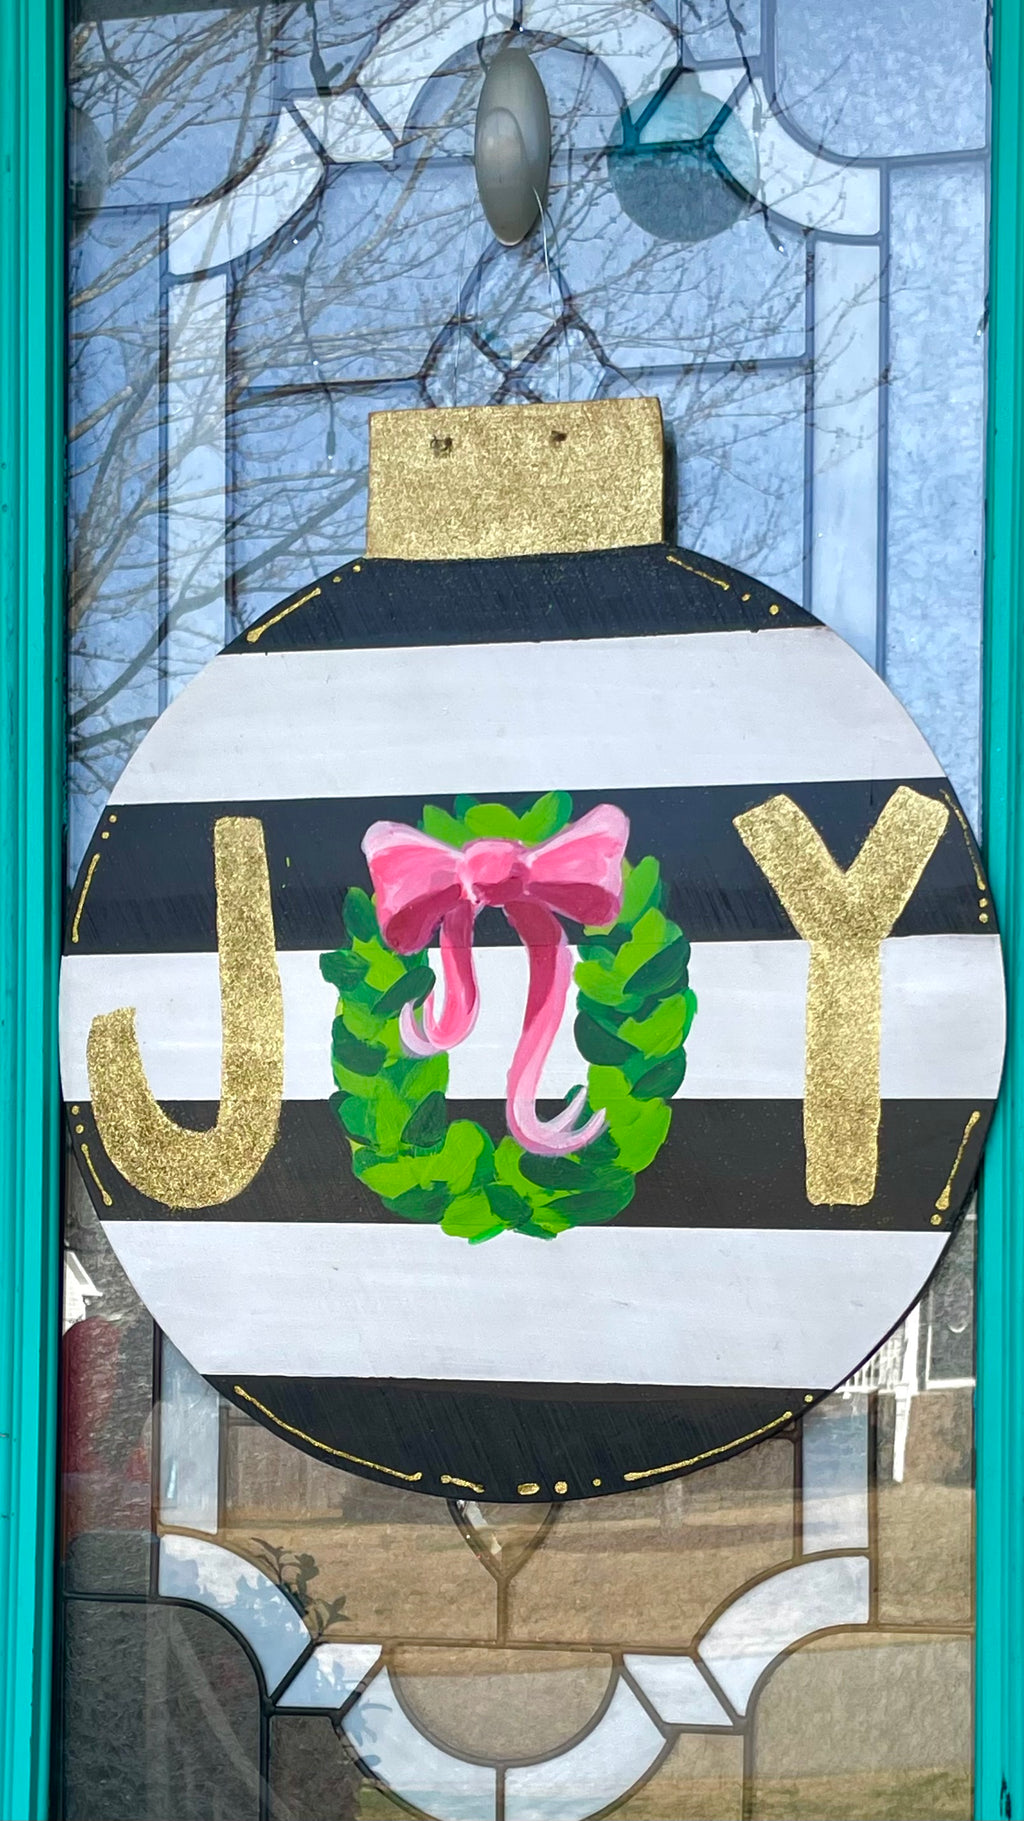 Joy Ornament Door Hanger